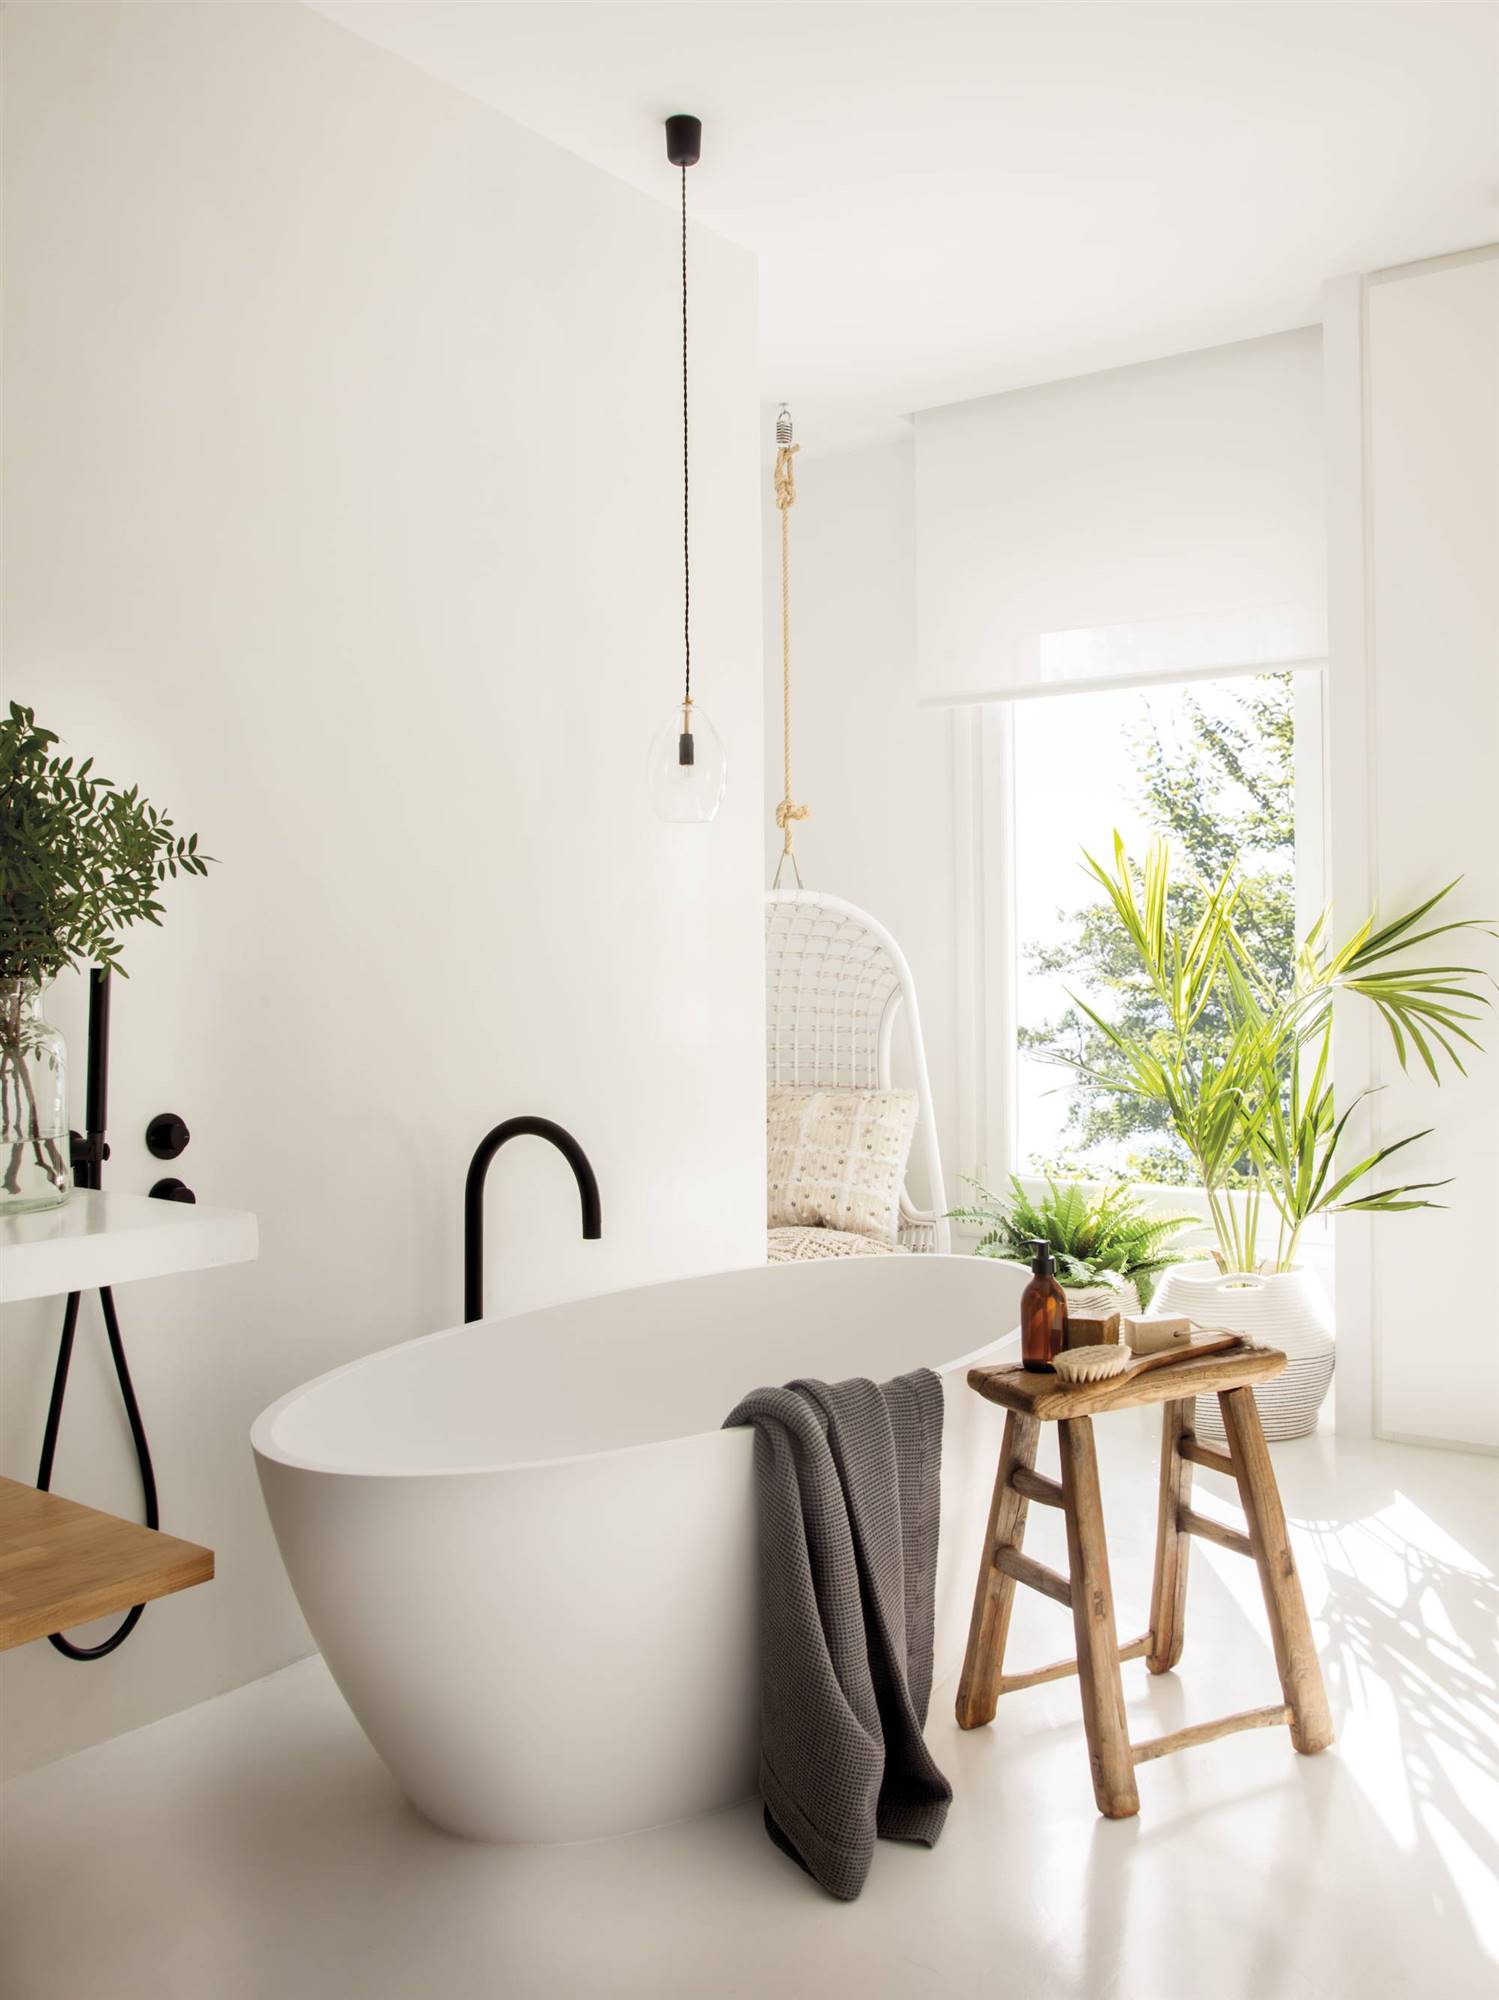 Reforma en baño ahora blanco con bañera exenta, taburete de madera y planta. 